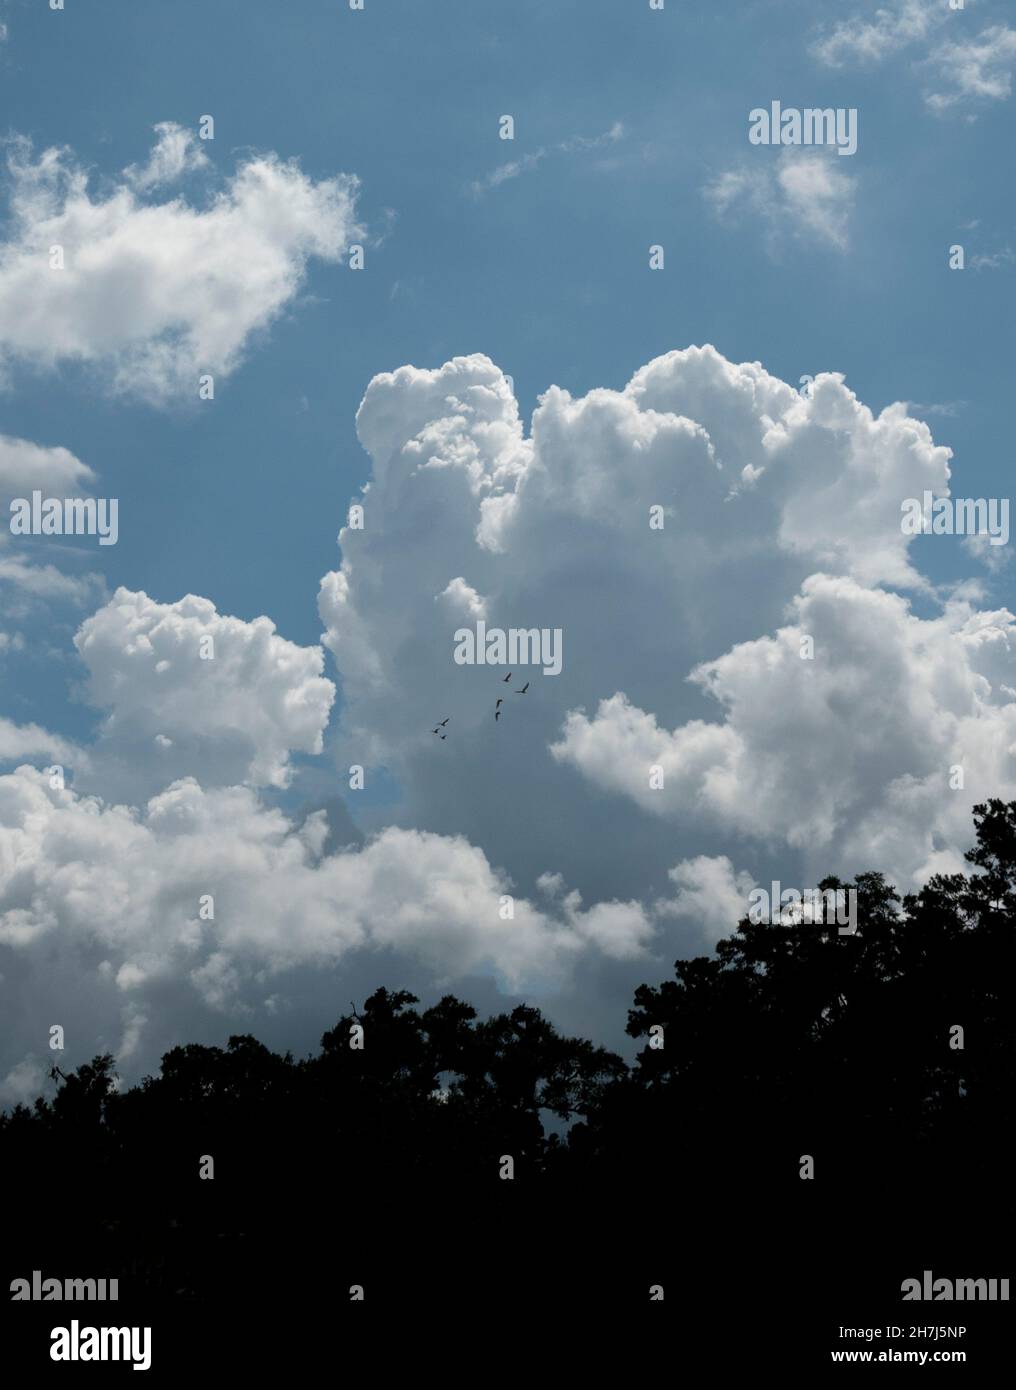 Wunderschöne Wolkenformationen am Nachmittag über der Stadt Alachua im Norden Floridas. Stockfoto